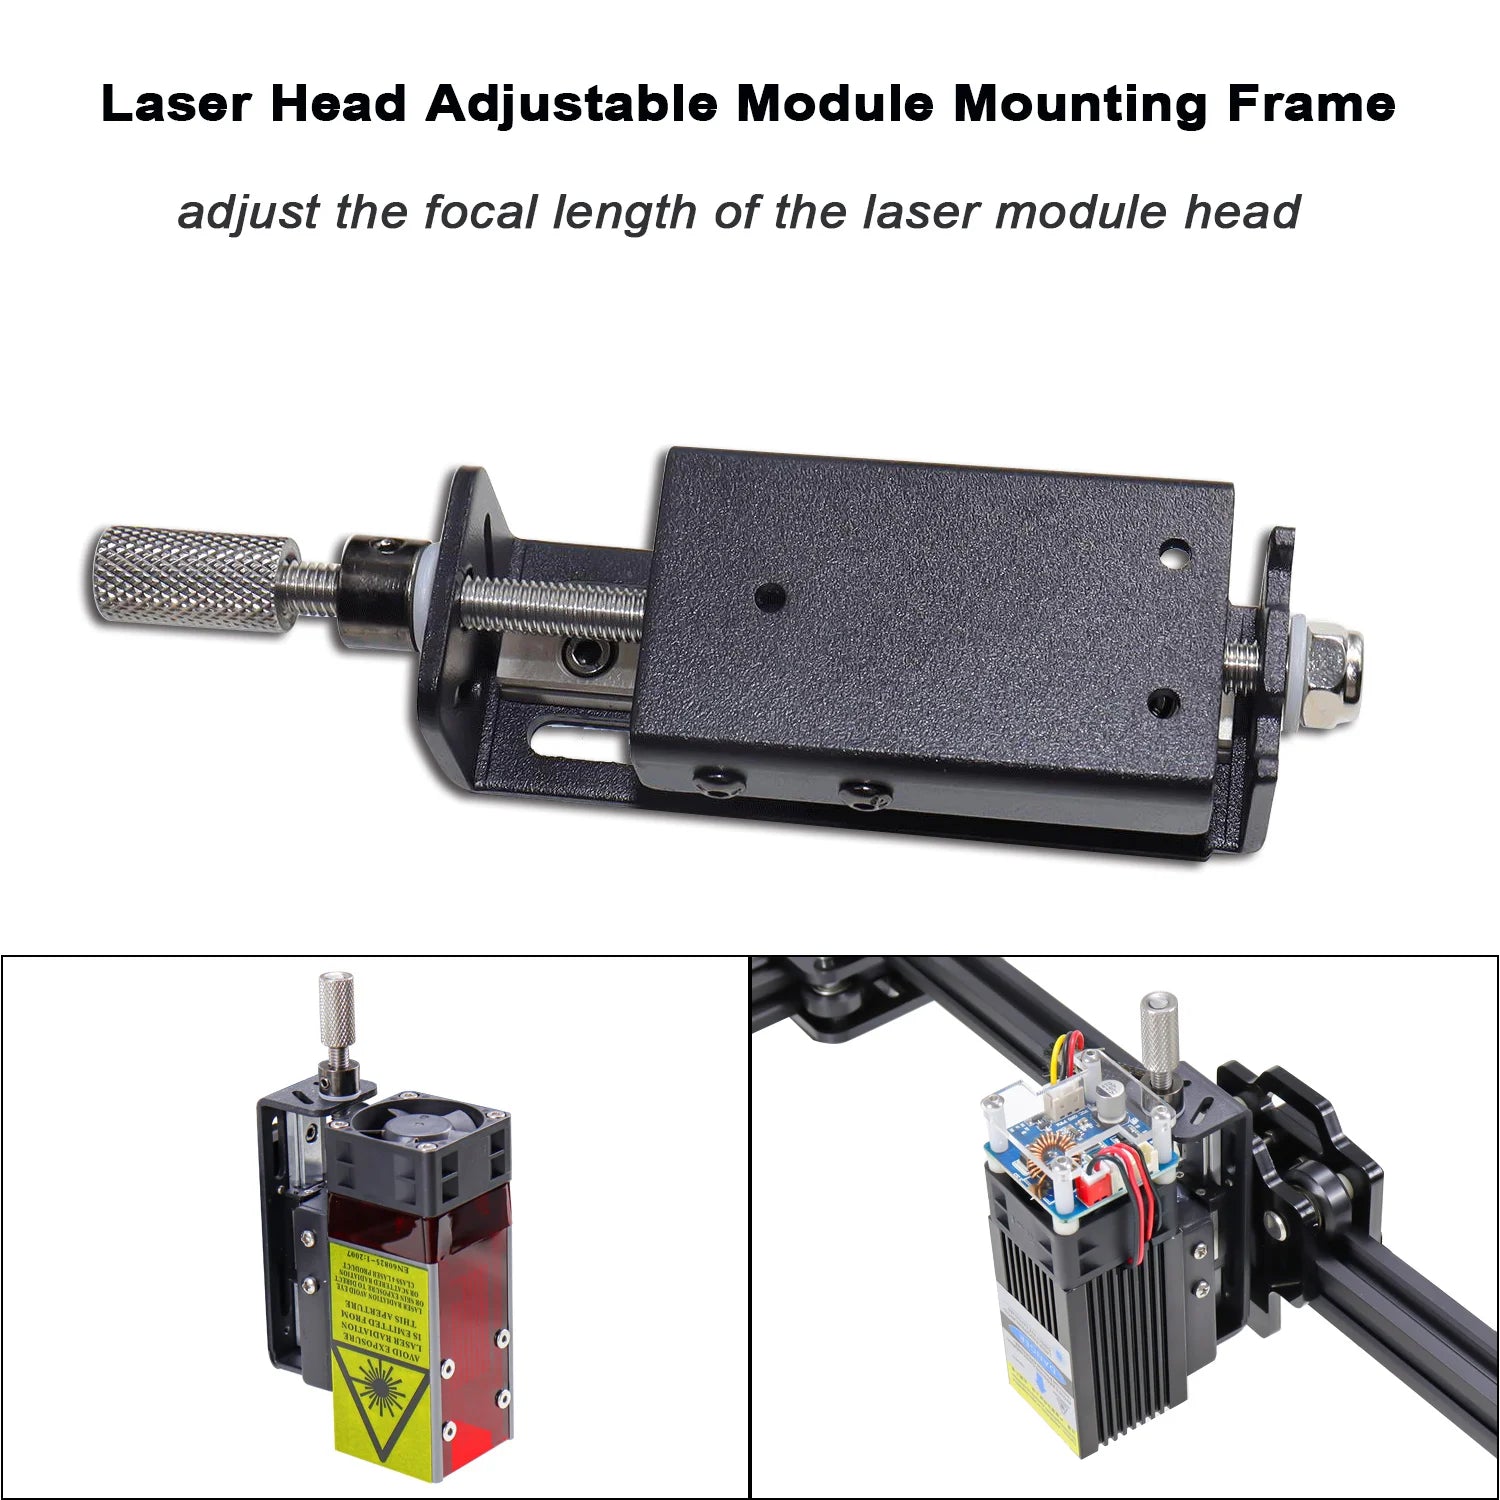 Focus Adjustment Laser Module Sliding Plate Aluminum Adjustable Holder Mounting Frame for Laser Engraver CNC Engraving Machine